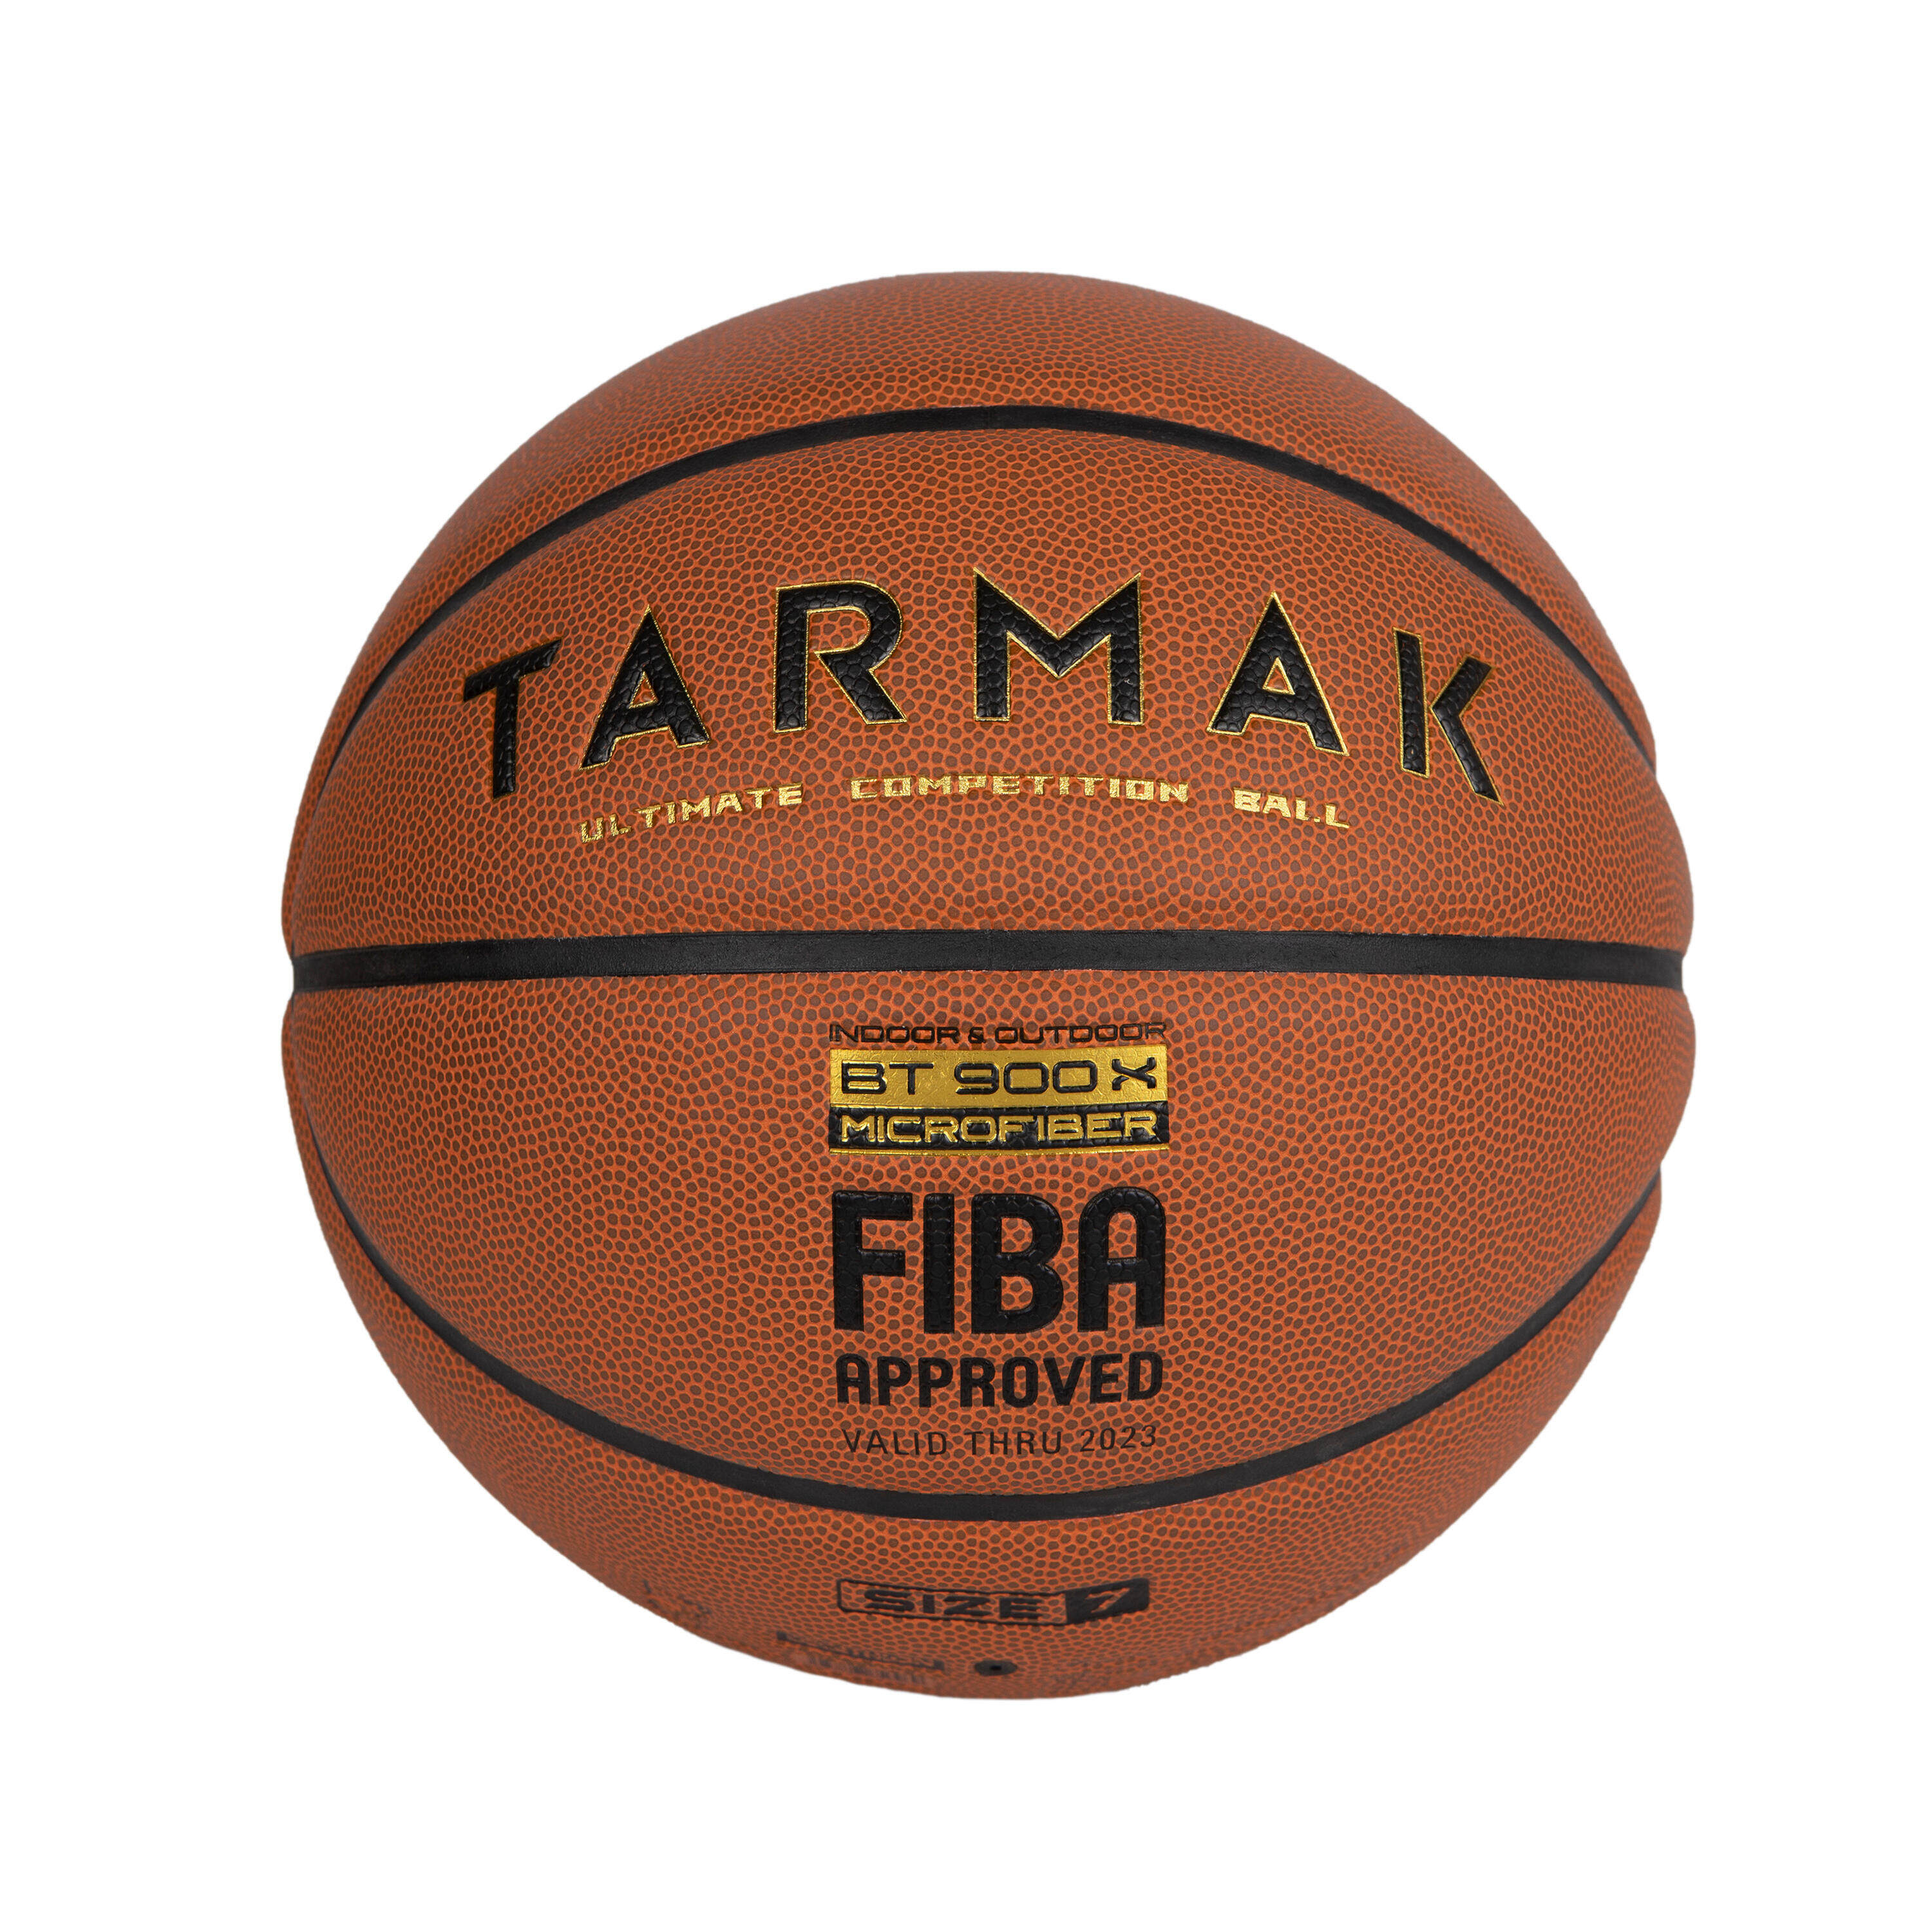 [ส่งฟรี ] ลูกบาสเกตบอล🏀 เบอร์ 7 รุ่น BT900 Grip ที่ผ่านการรับรองโดย FIBA สำหรับเด็กผู้ชายและผู้ใหญ่ มาตราฐาน FIBA Basketball Ball 🏀 Size 7 Basketball BT900 Grip. FIBA-approved for boys and adults ลูกบาสเกตบอล 6 7